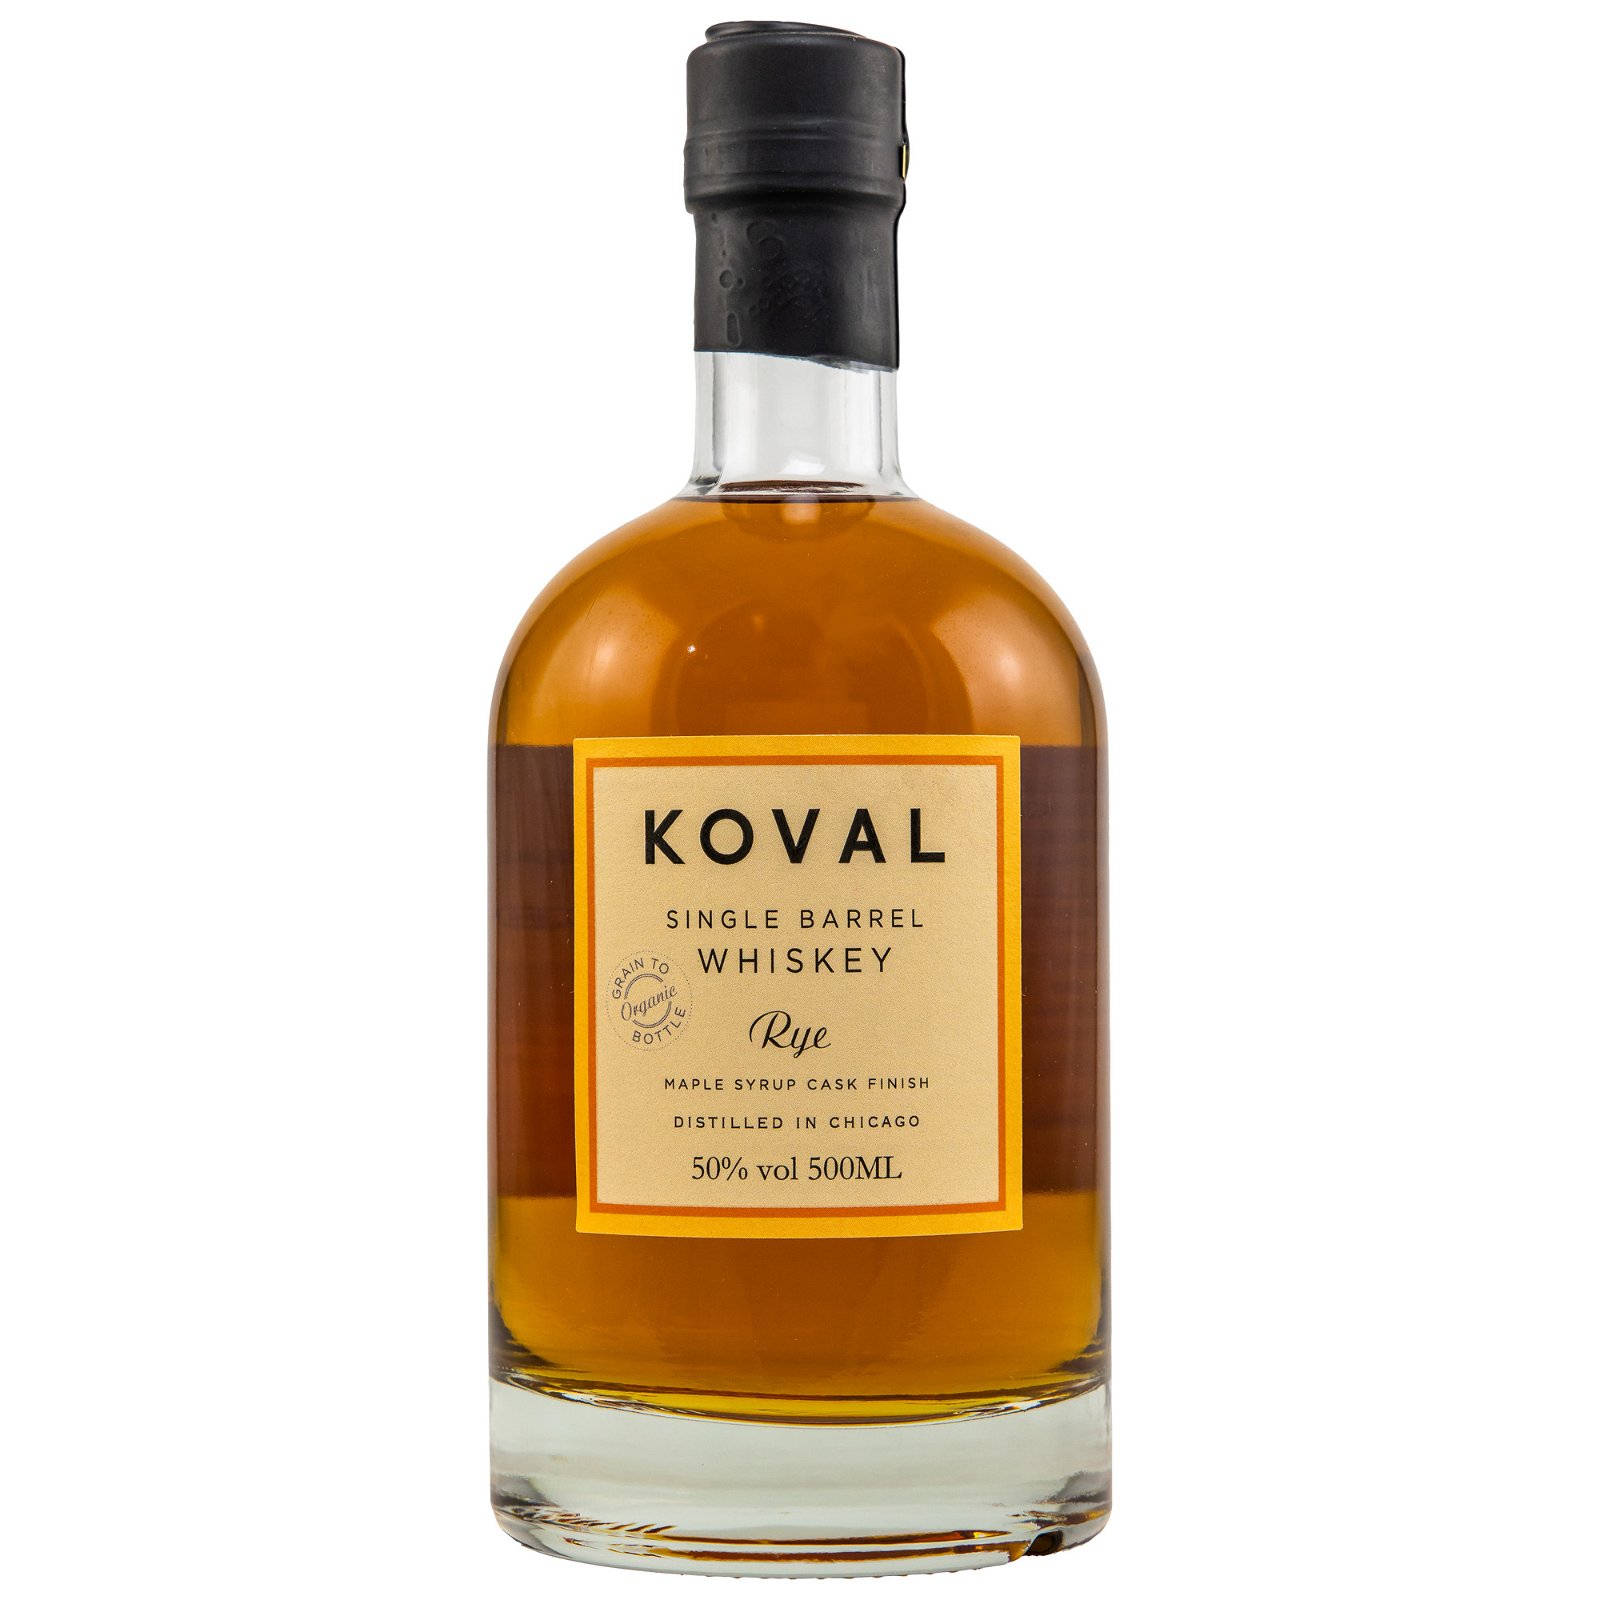 Koval Single Barrel Rye Maple Syrup Cask Finish (Bio)